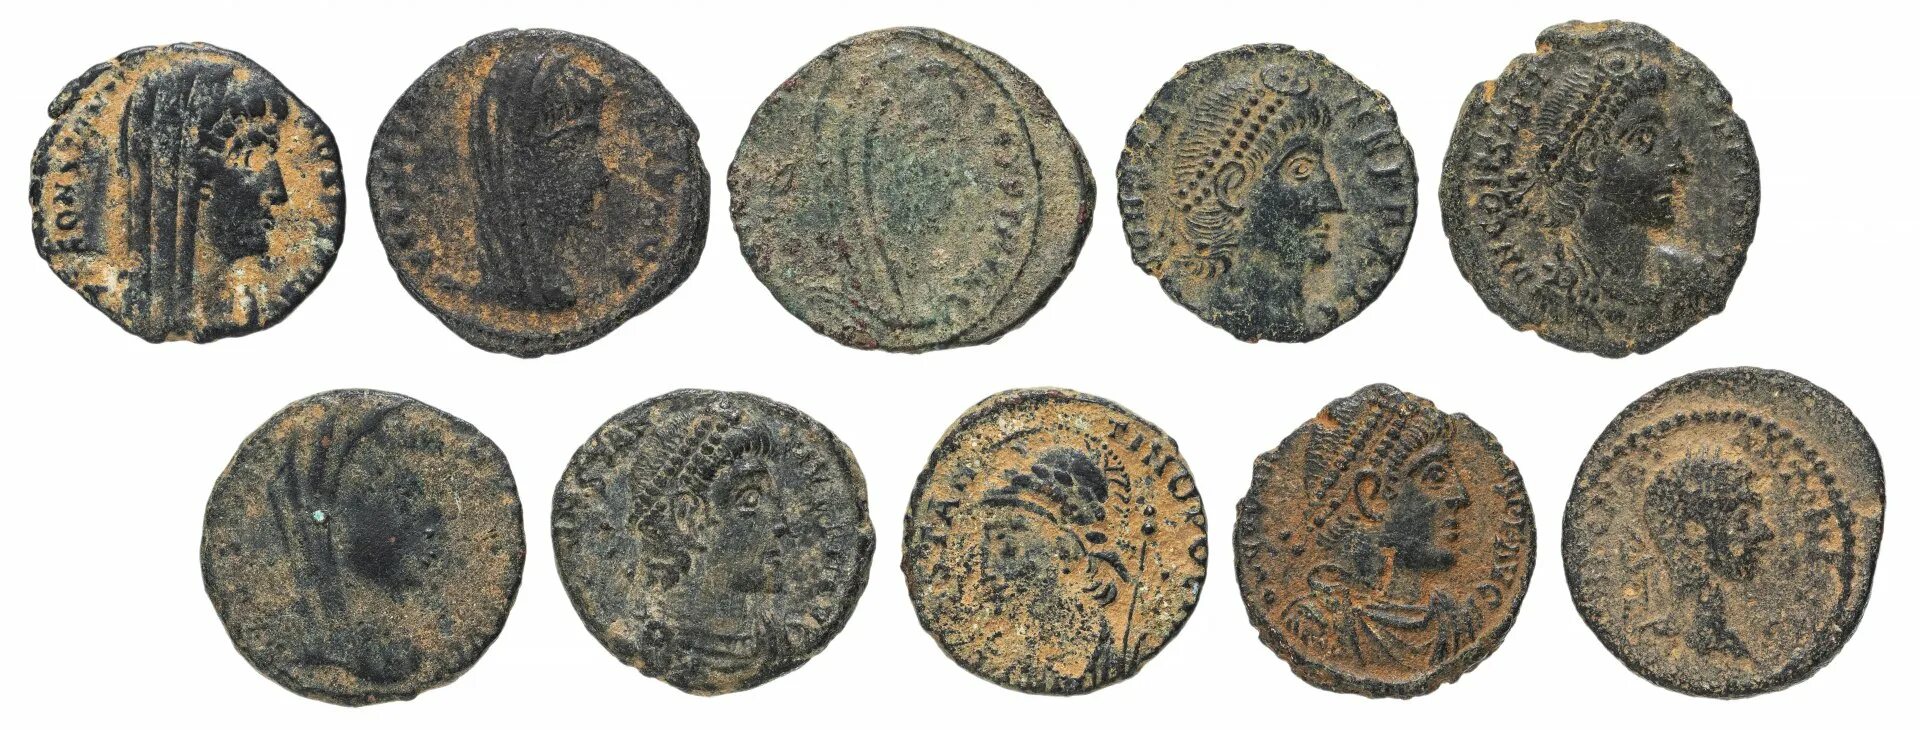 Римские монеты лепты Пилата. Римские монеты времен Иисуса Христа. Золотые монеты римской империи древний Рим. Shann монета Римская 3 век.